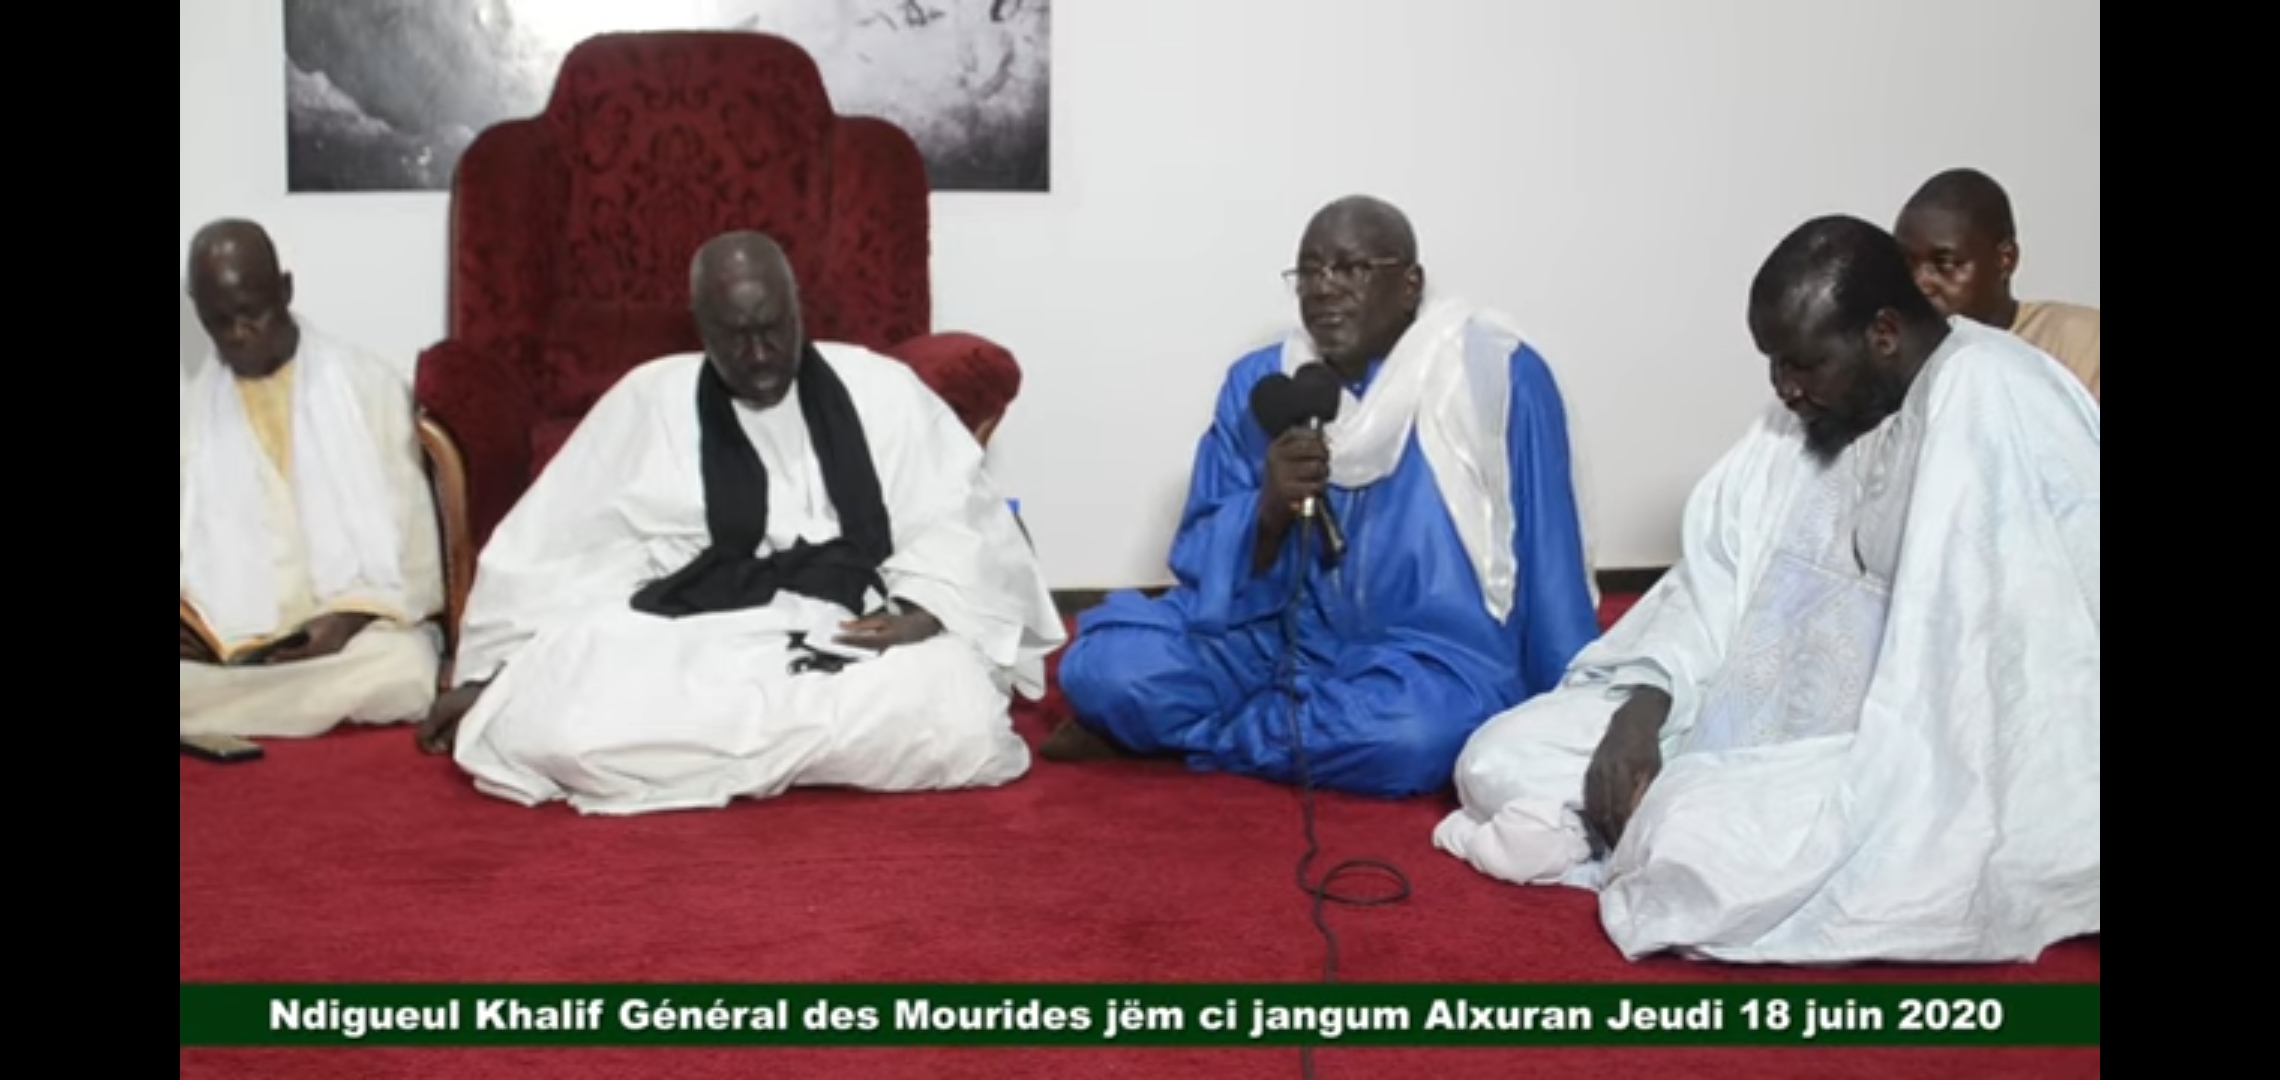 HIVERNAGE ET COVID-19/ Le Khalife Général des Mourides pour un "Jeudi" spirituellement ponctué par des récitals de Coran.